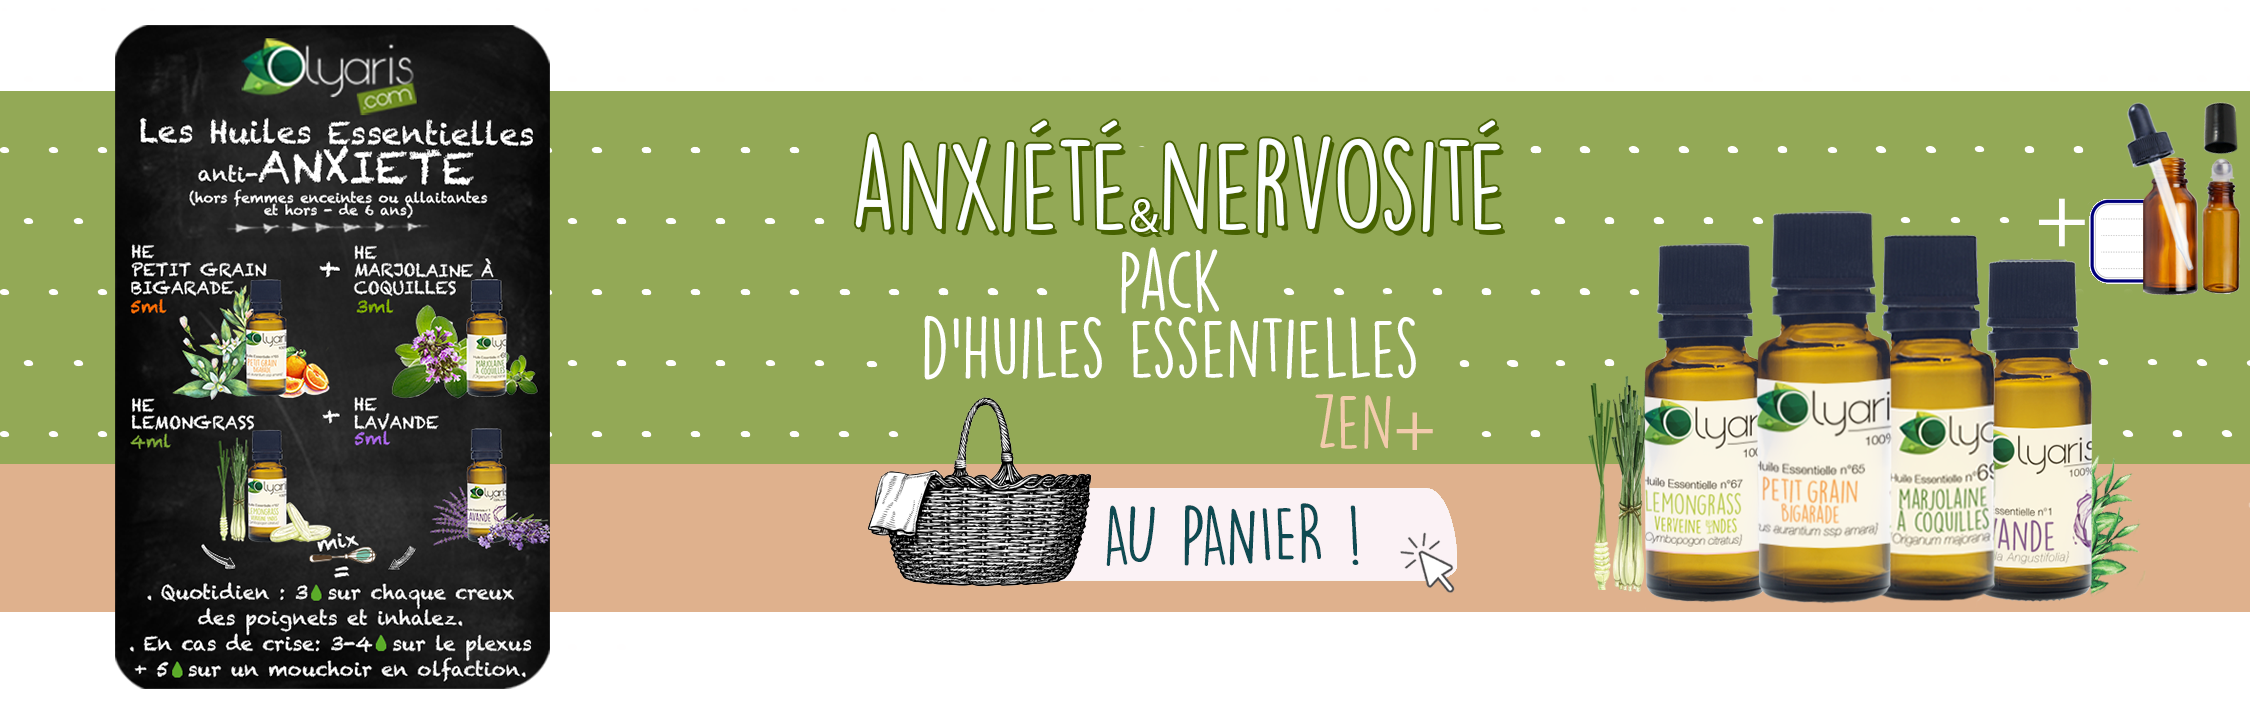 Anxiété et Nervosité : les huiles essentielles à utiliser